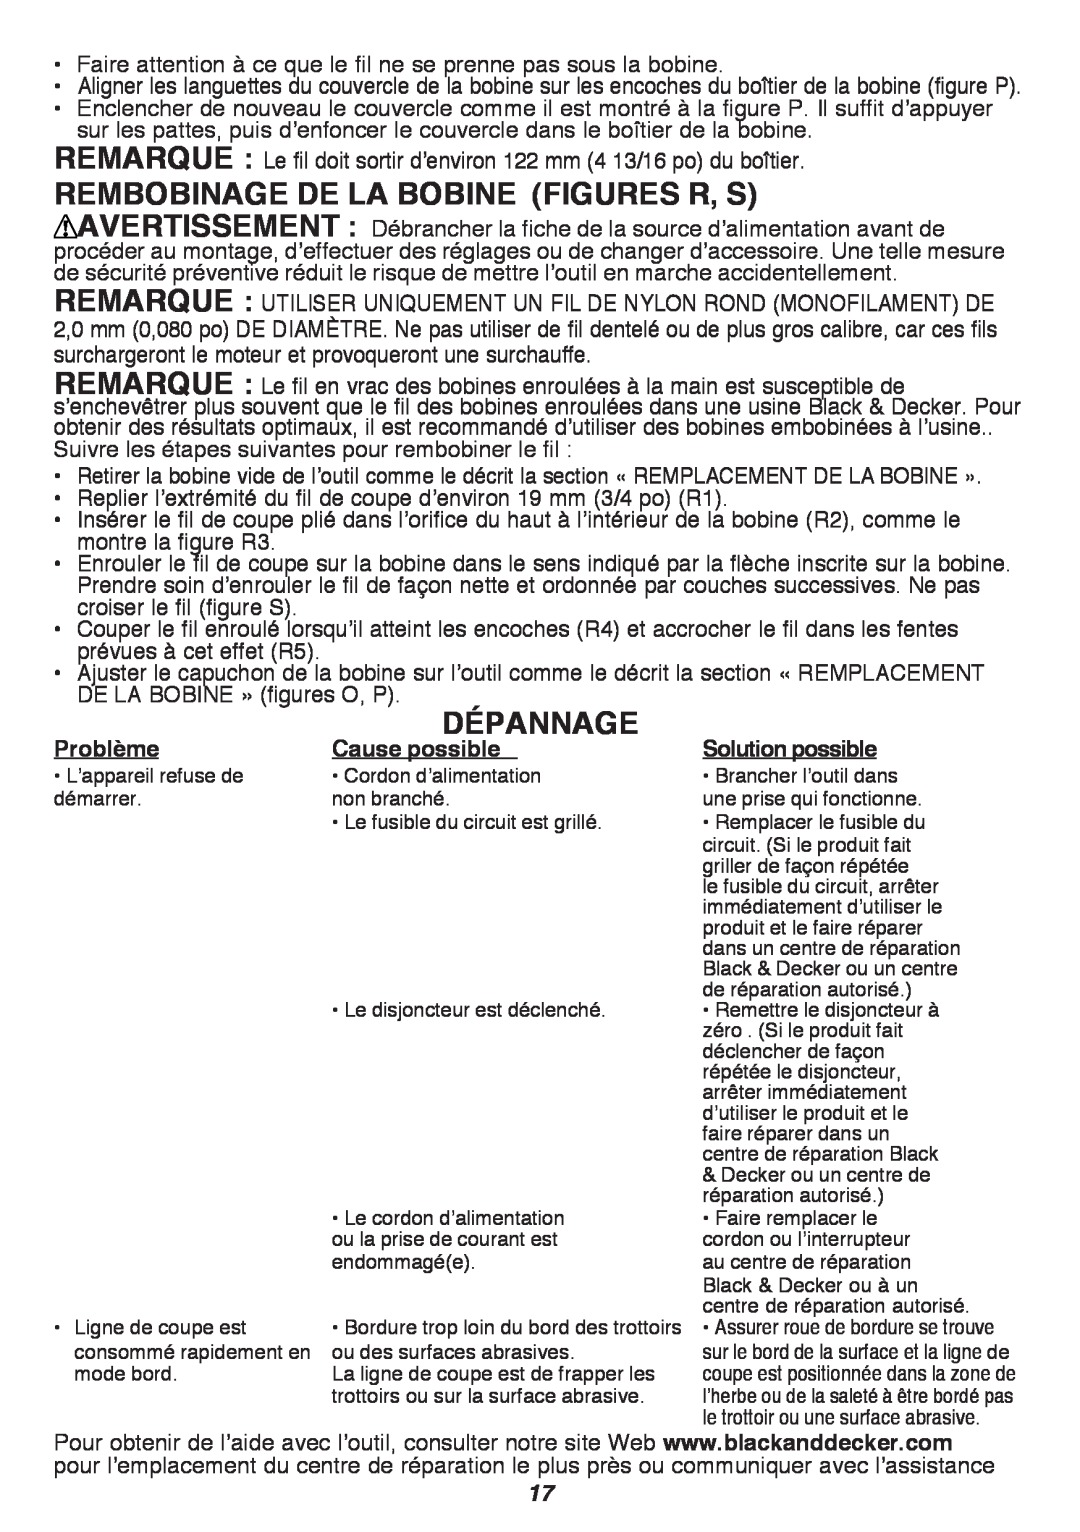 Black & Decker GH3000 REMBOBINAGE DE LA BOBINE figures R, S, Dépannage, Problème, Solution possible, Cause possible 